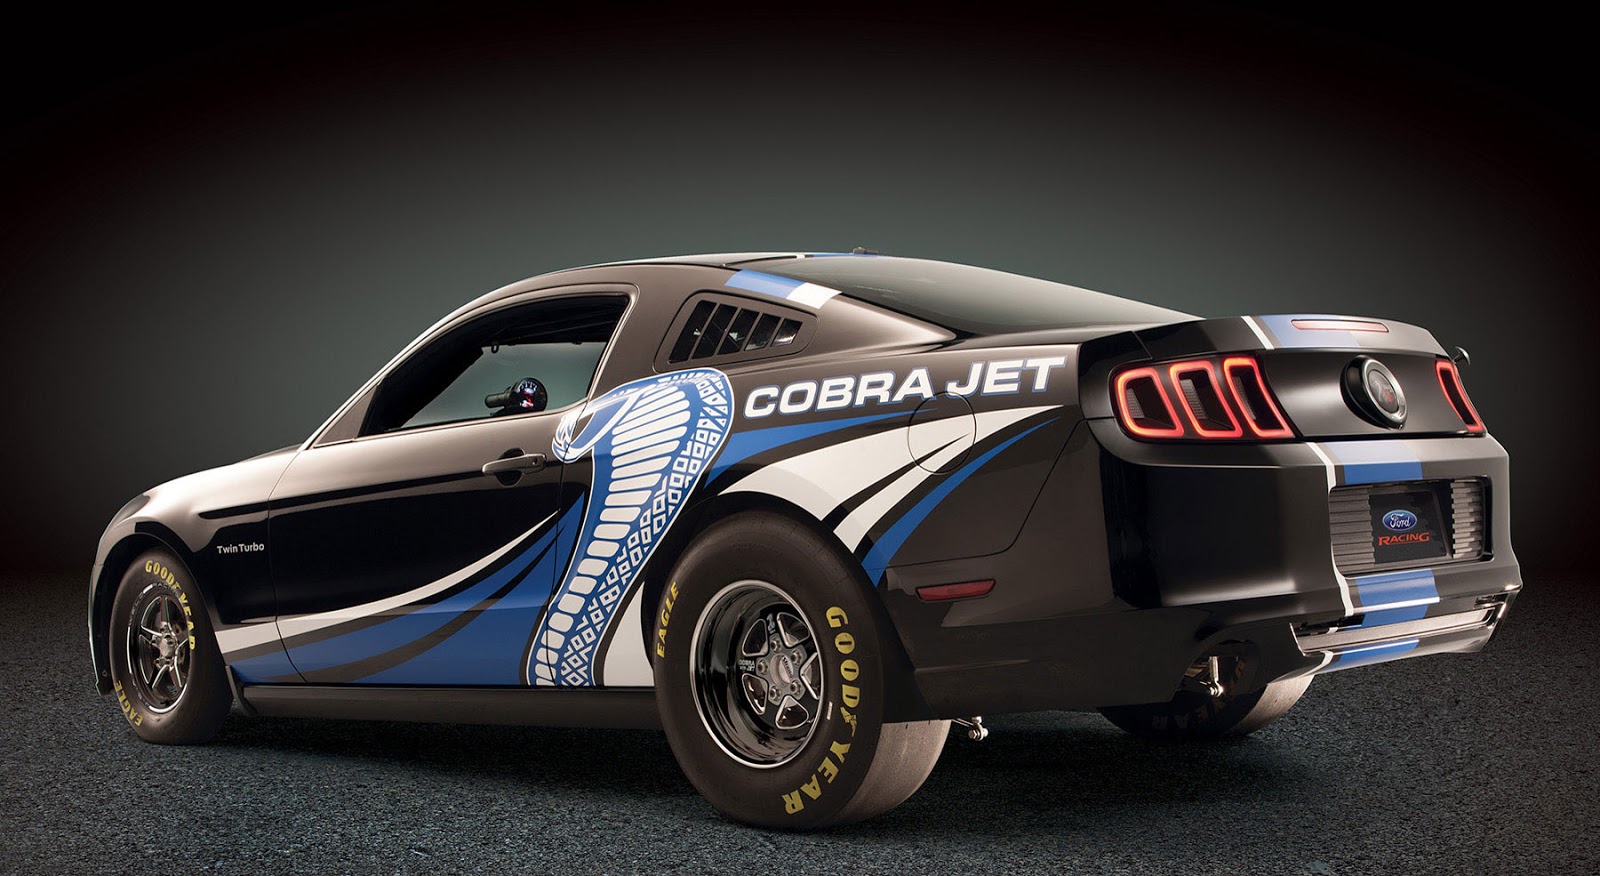 2013 Ford cobra jet mustang horsepower #3